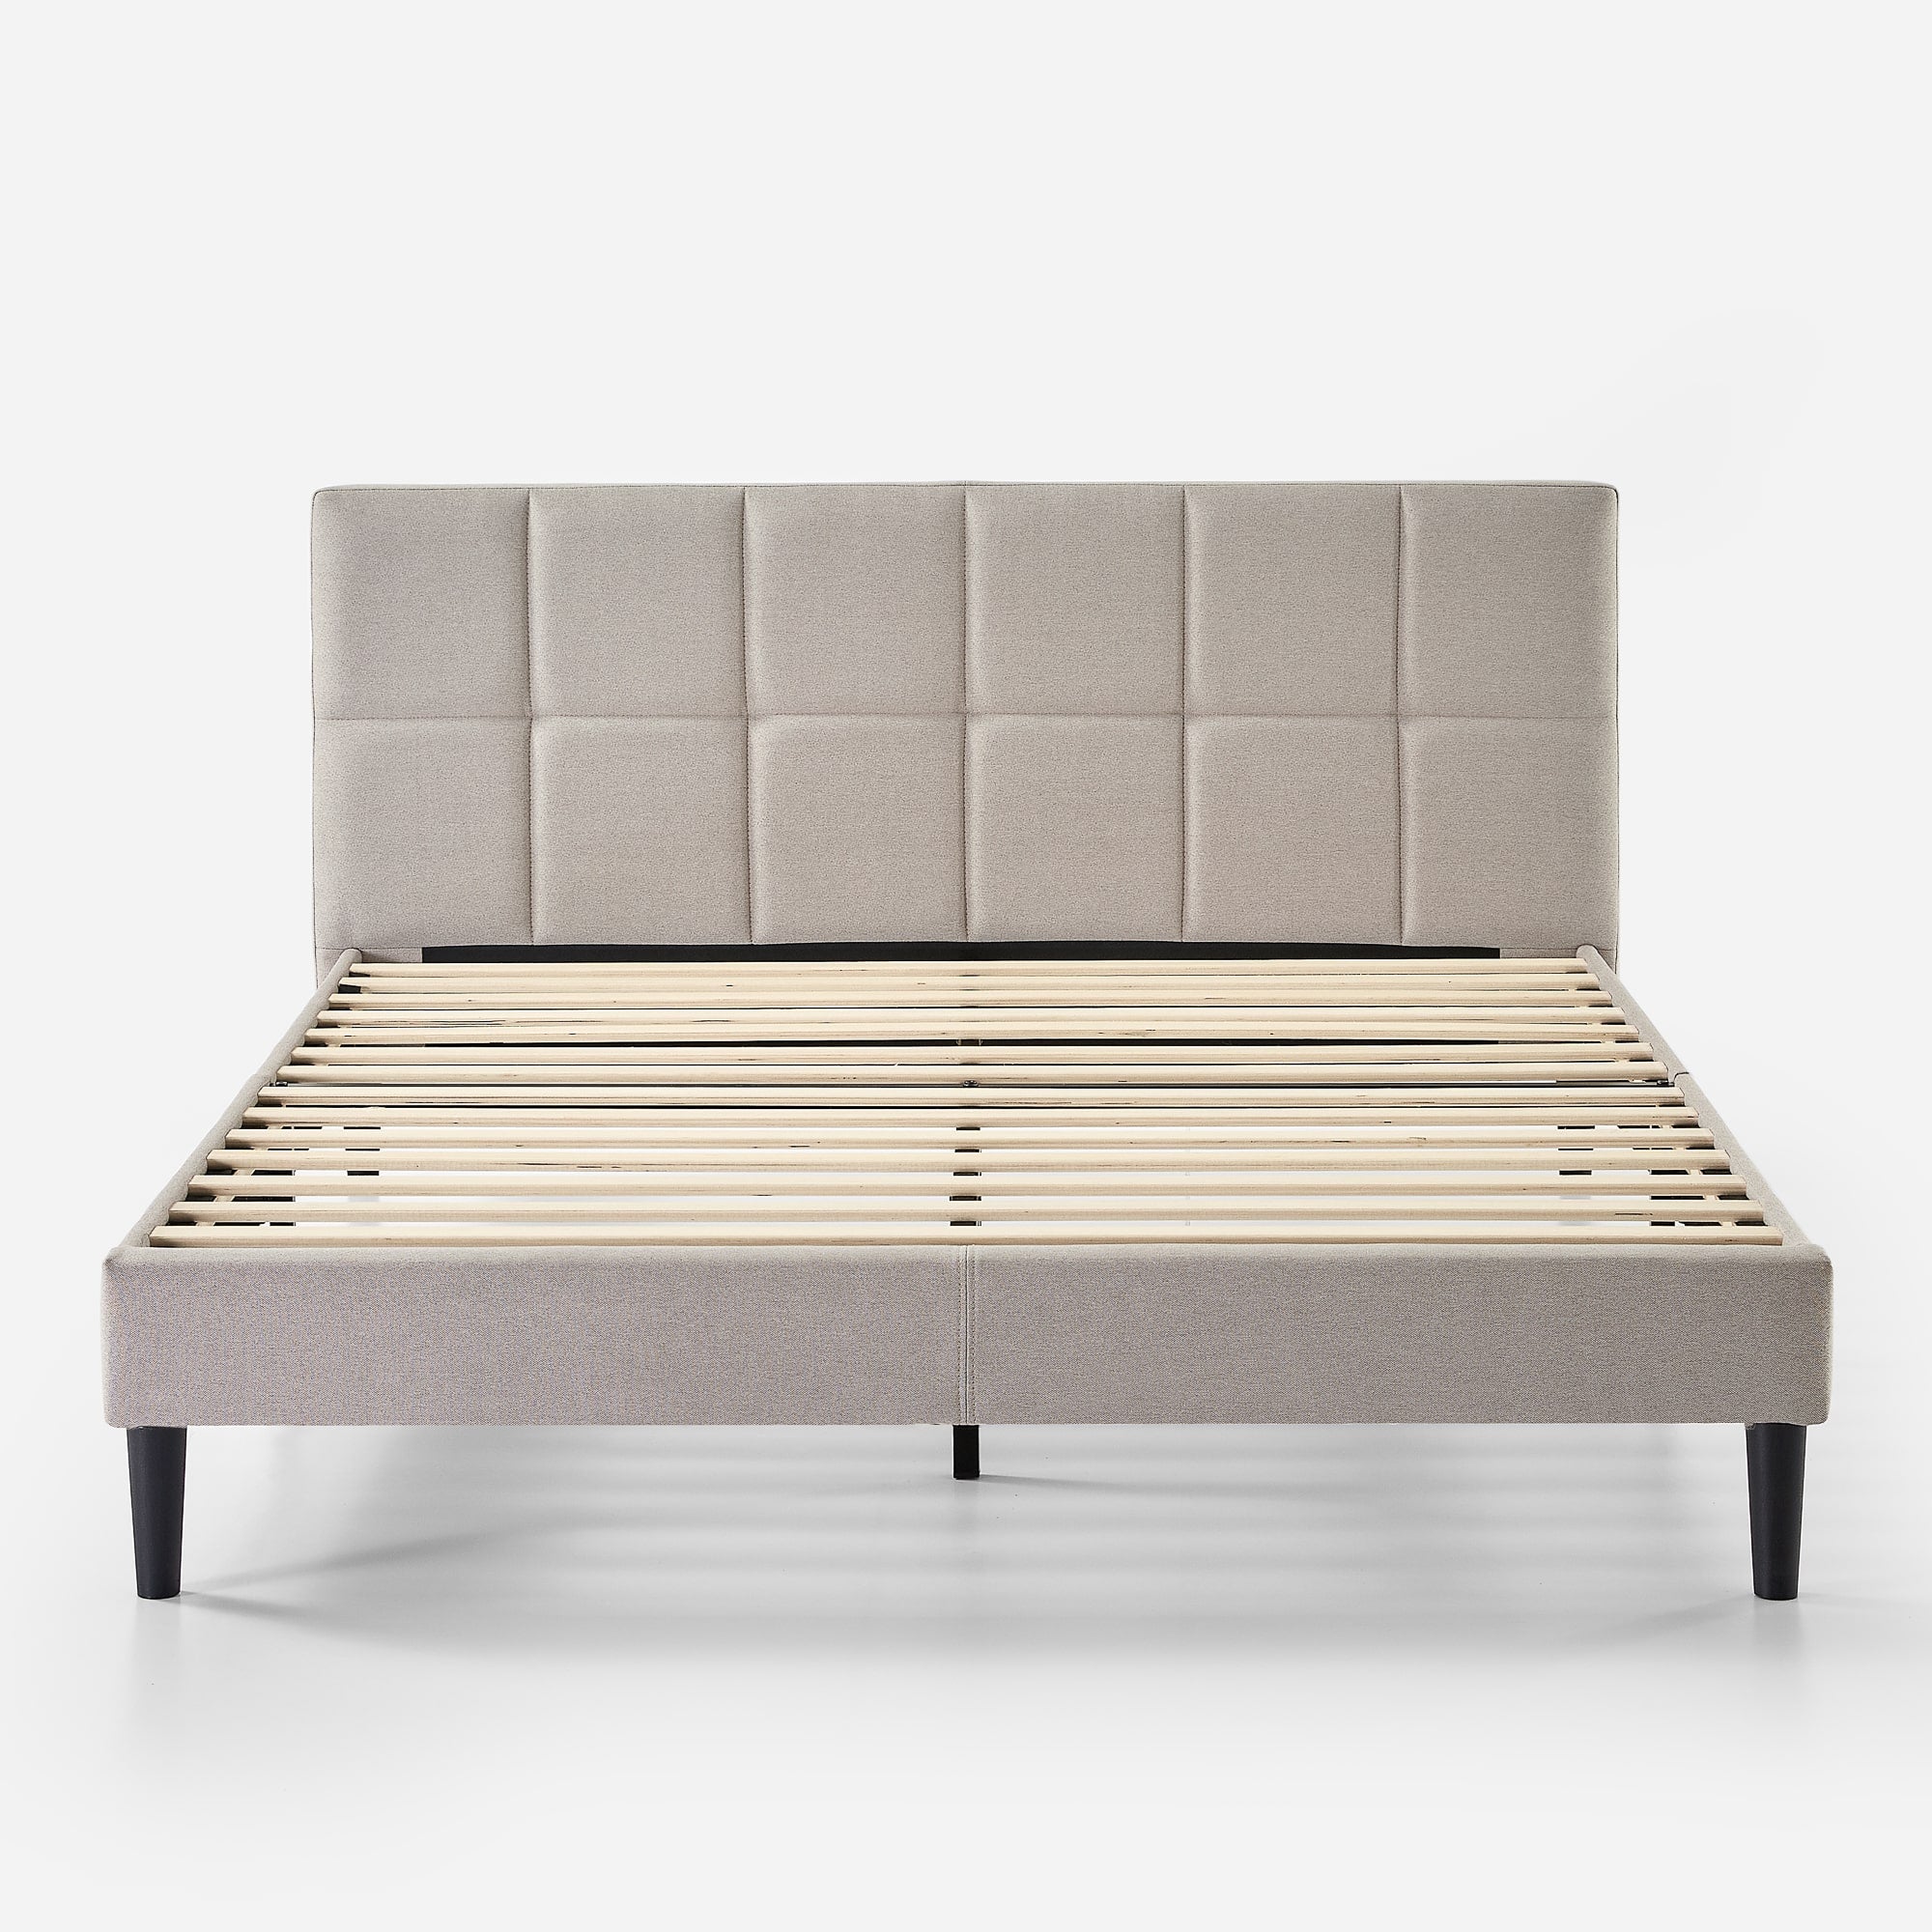 Lottie Upholstered Platform Bed Frame with Short Headboard